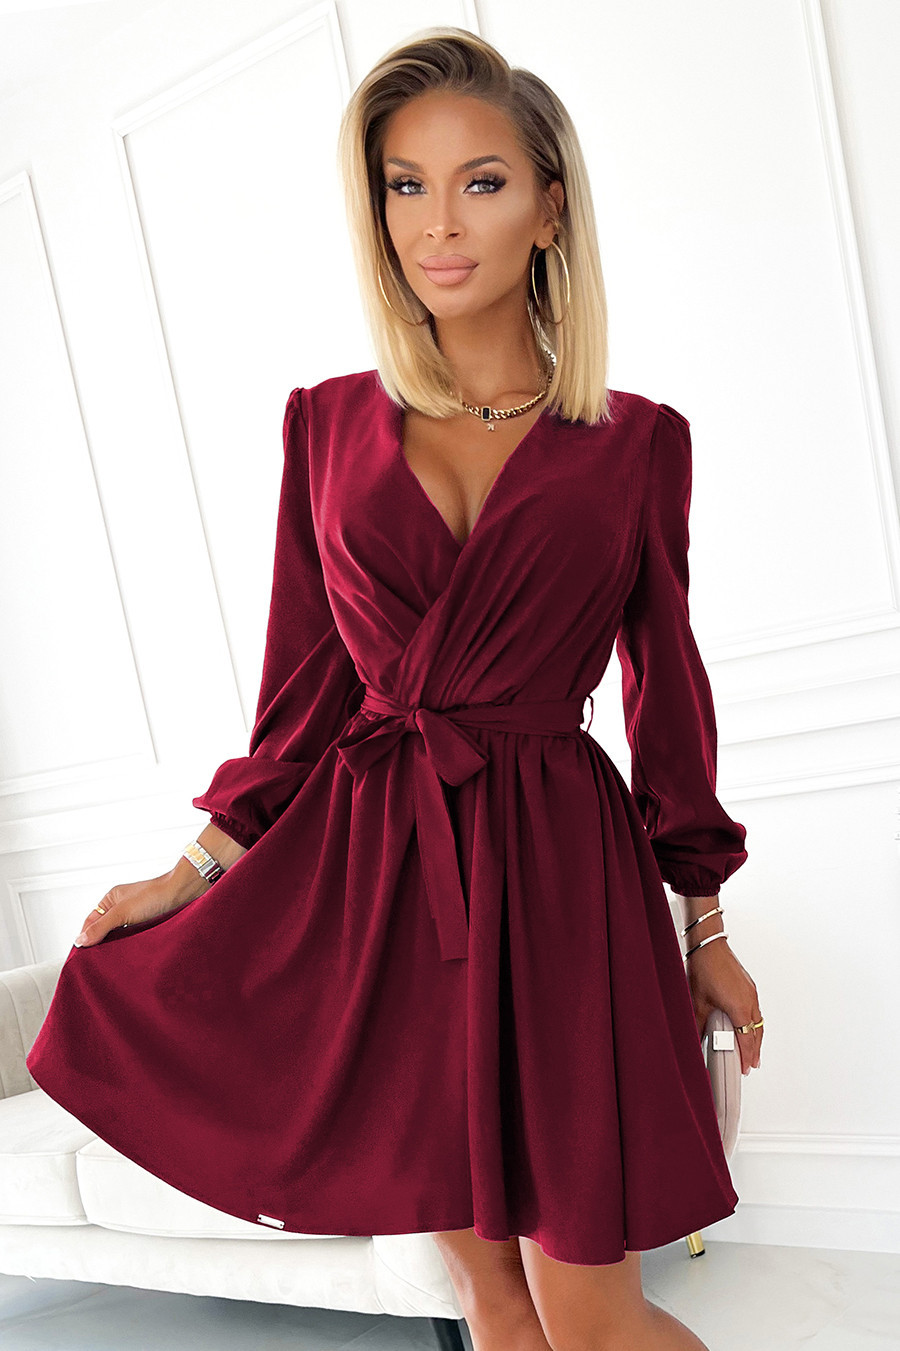 BINDY - Velmi žensky působící dámské šaty ve vínové bordó barvě s dekoltem 339-3 S/M